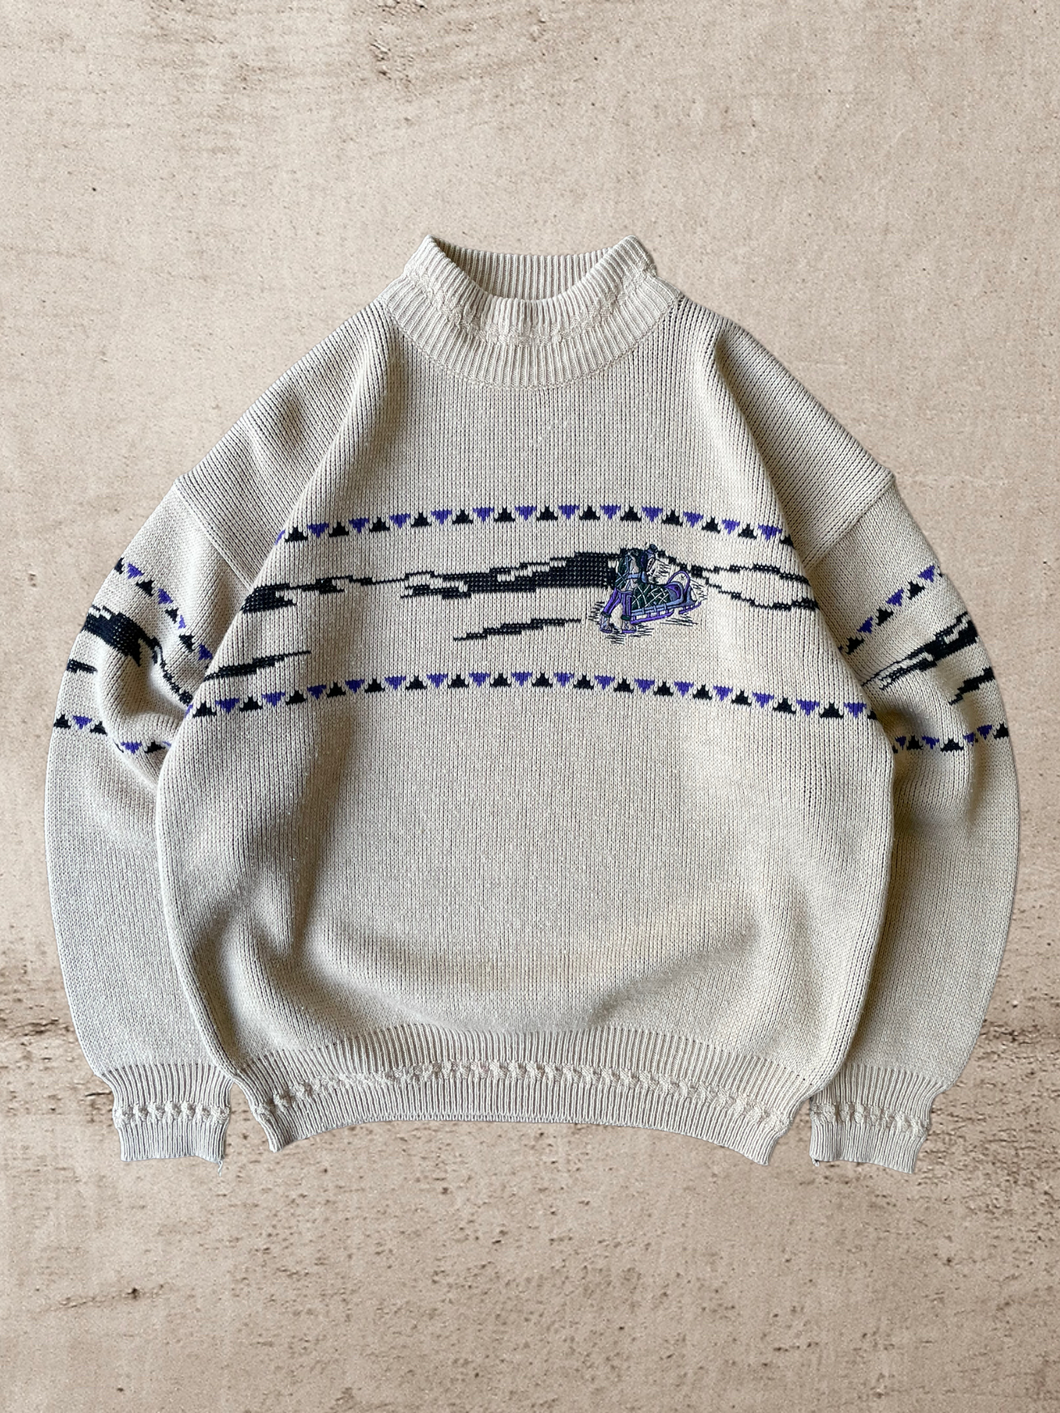 Vintage Mock Neck Embroidered Knit Sweater - Large